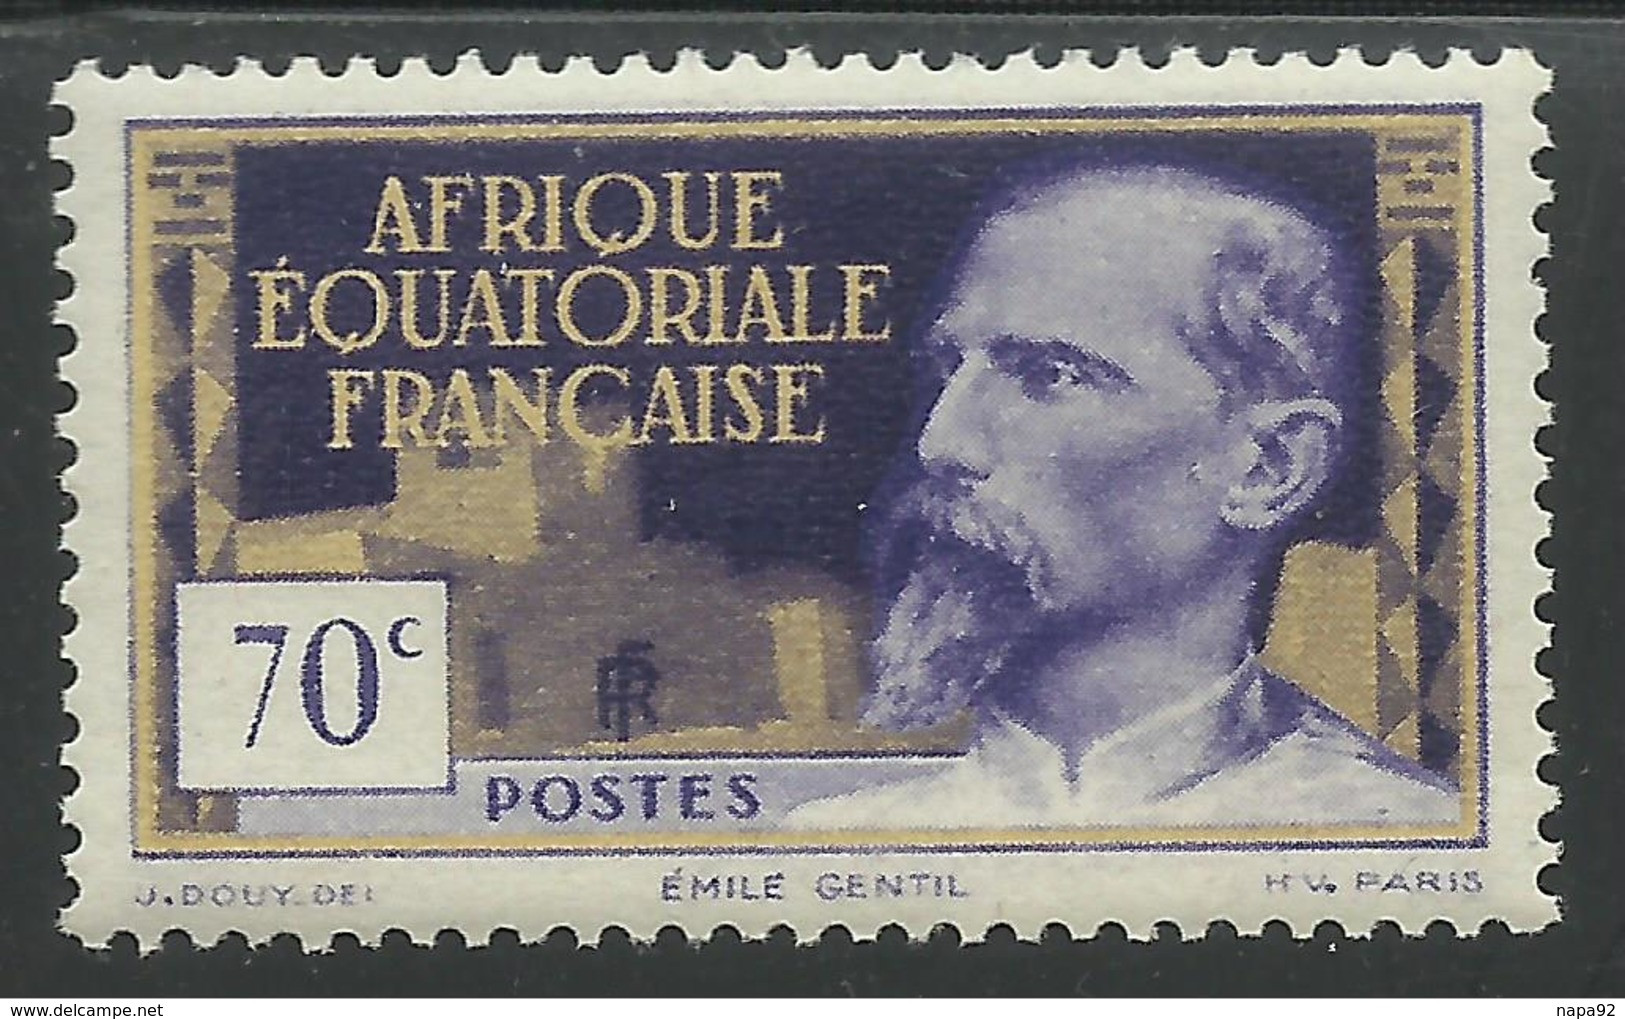 AFRIQUE EQUATORIALE FRANCAISE - AEF - A.E.F. - 1940 - YT 81 MNH - Neufs